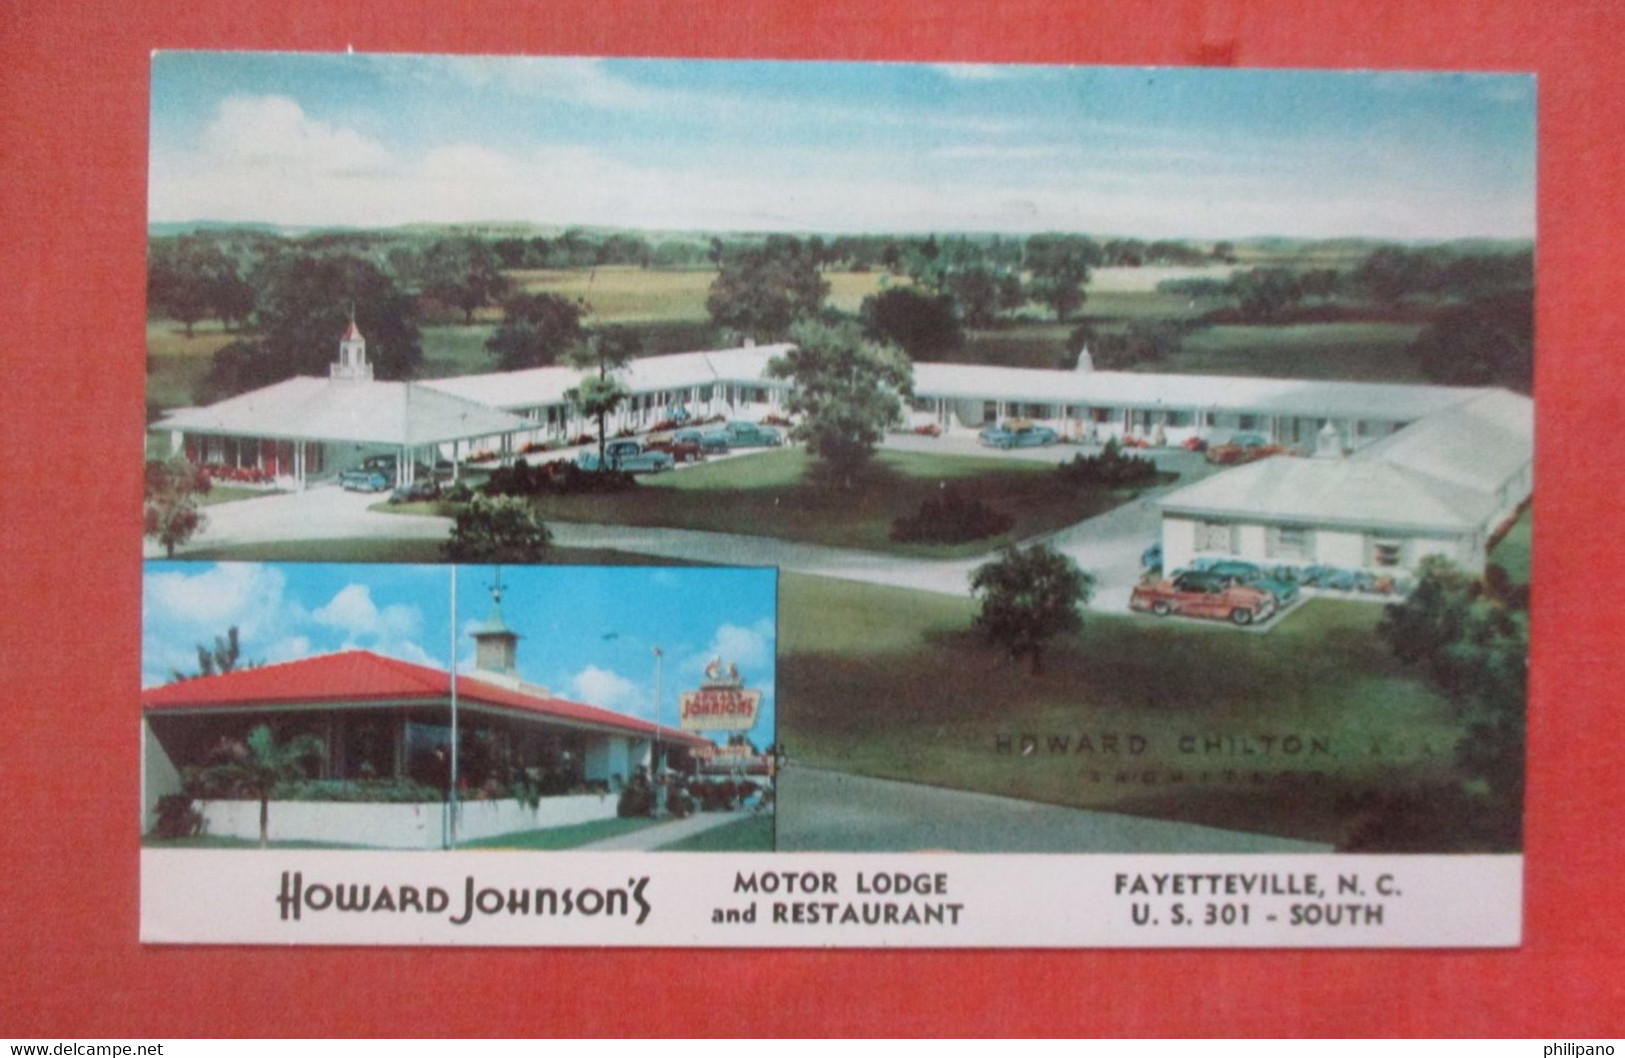 Howard Johnson's Motor Lodge & Restaurant    Fayetteville  North Carolina > Fayetteville     Ref 4811 - Fayetteville